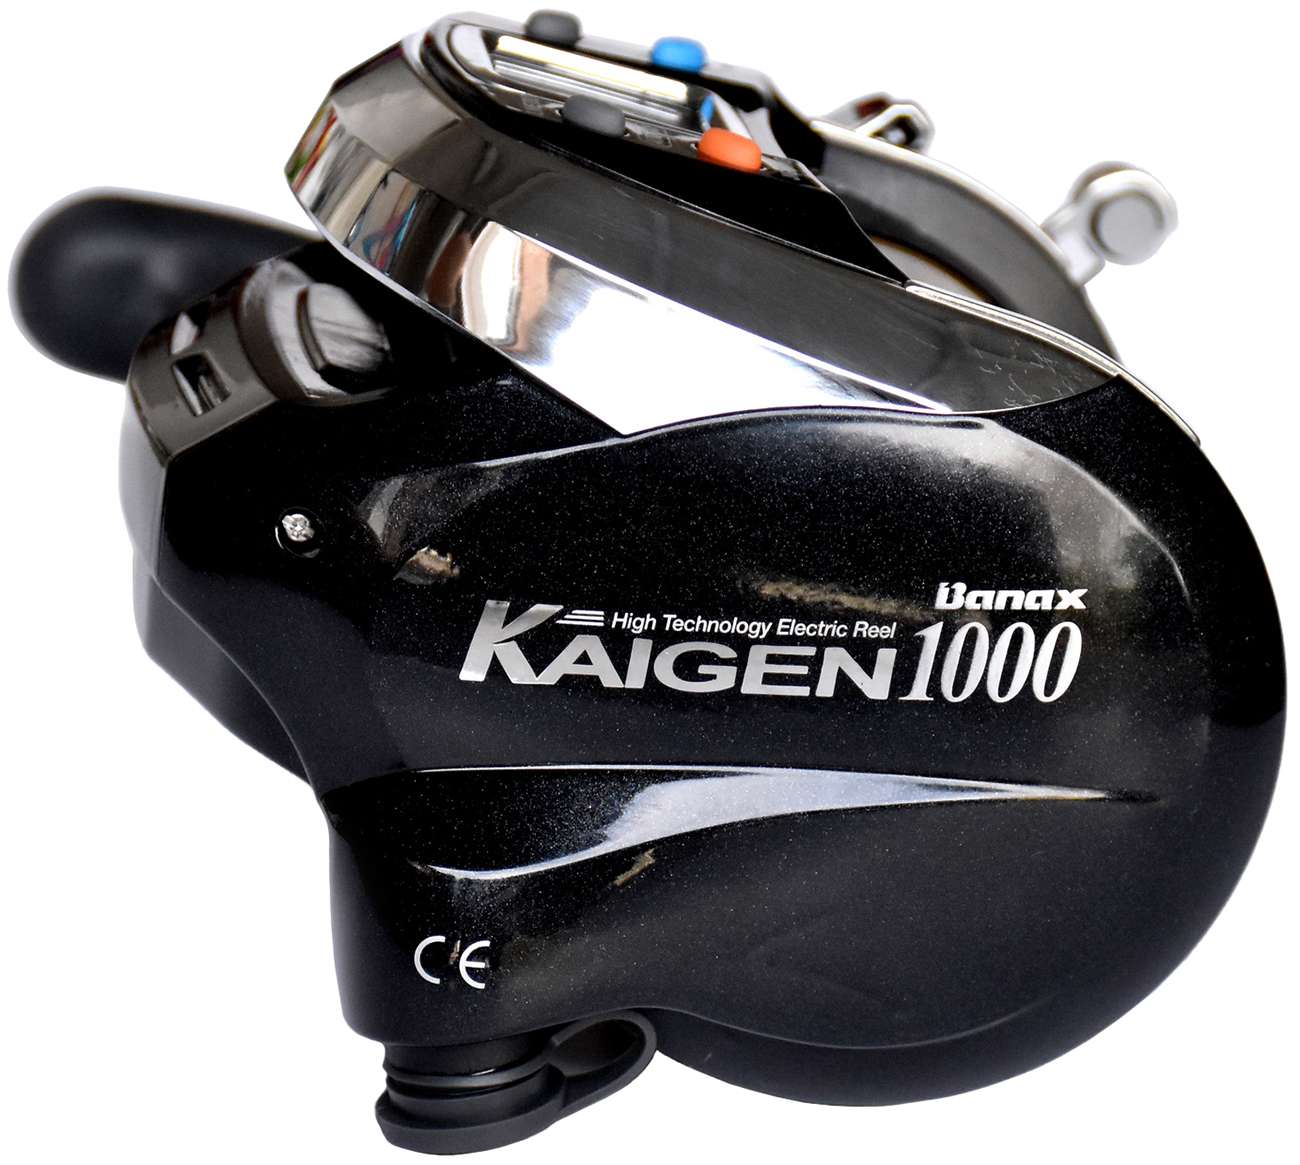 Buy Banax Kaigen 1000 Electric Reel with Warranty Online at desertcartUAE